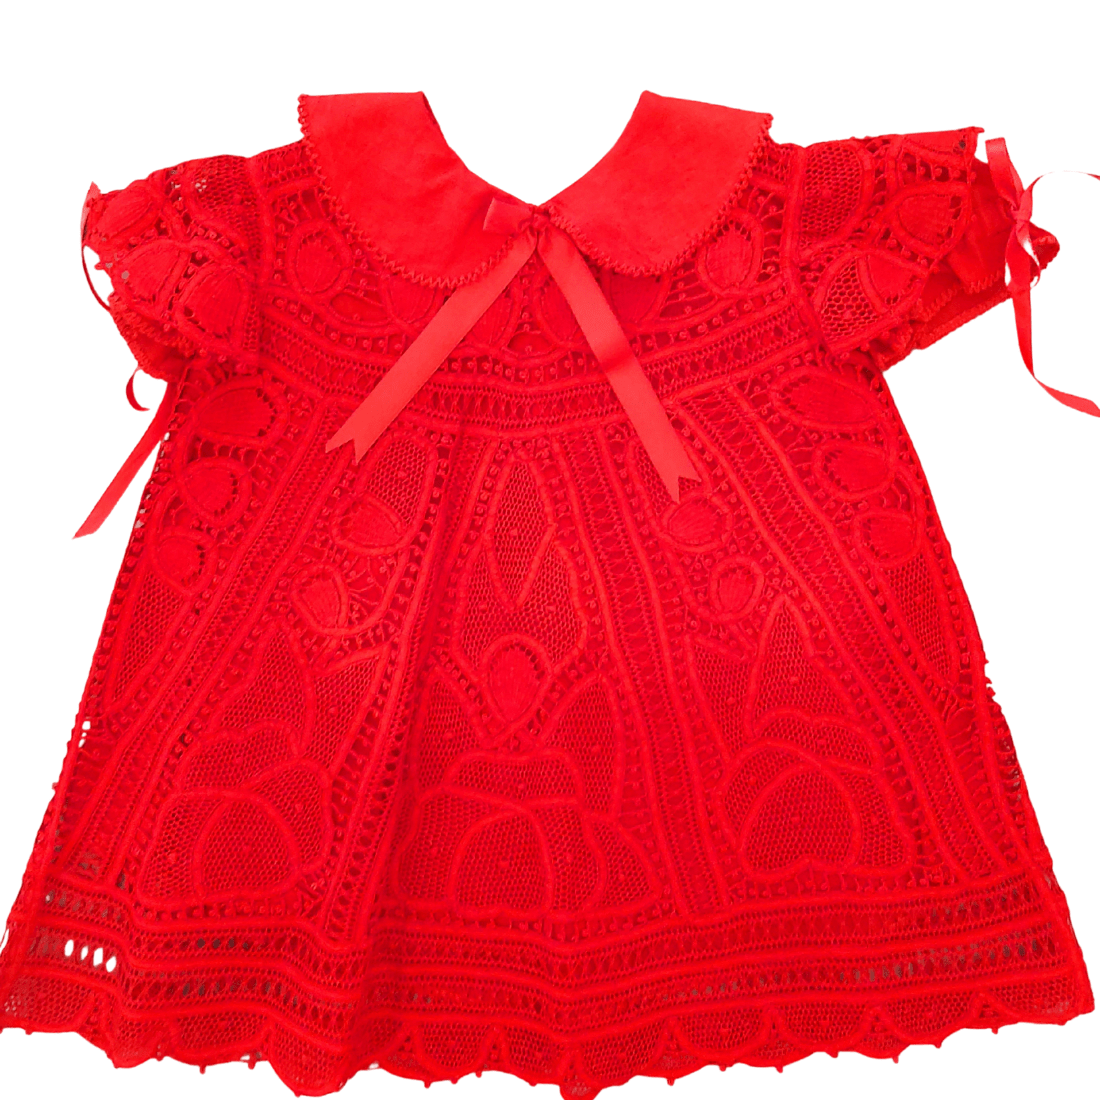 Vestido renda renascença vermelho ângela - 1 ano